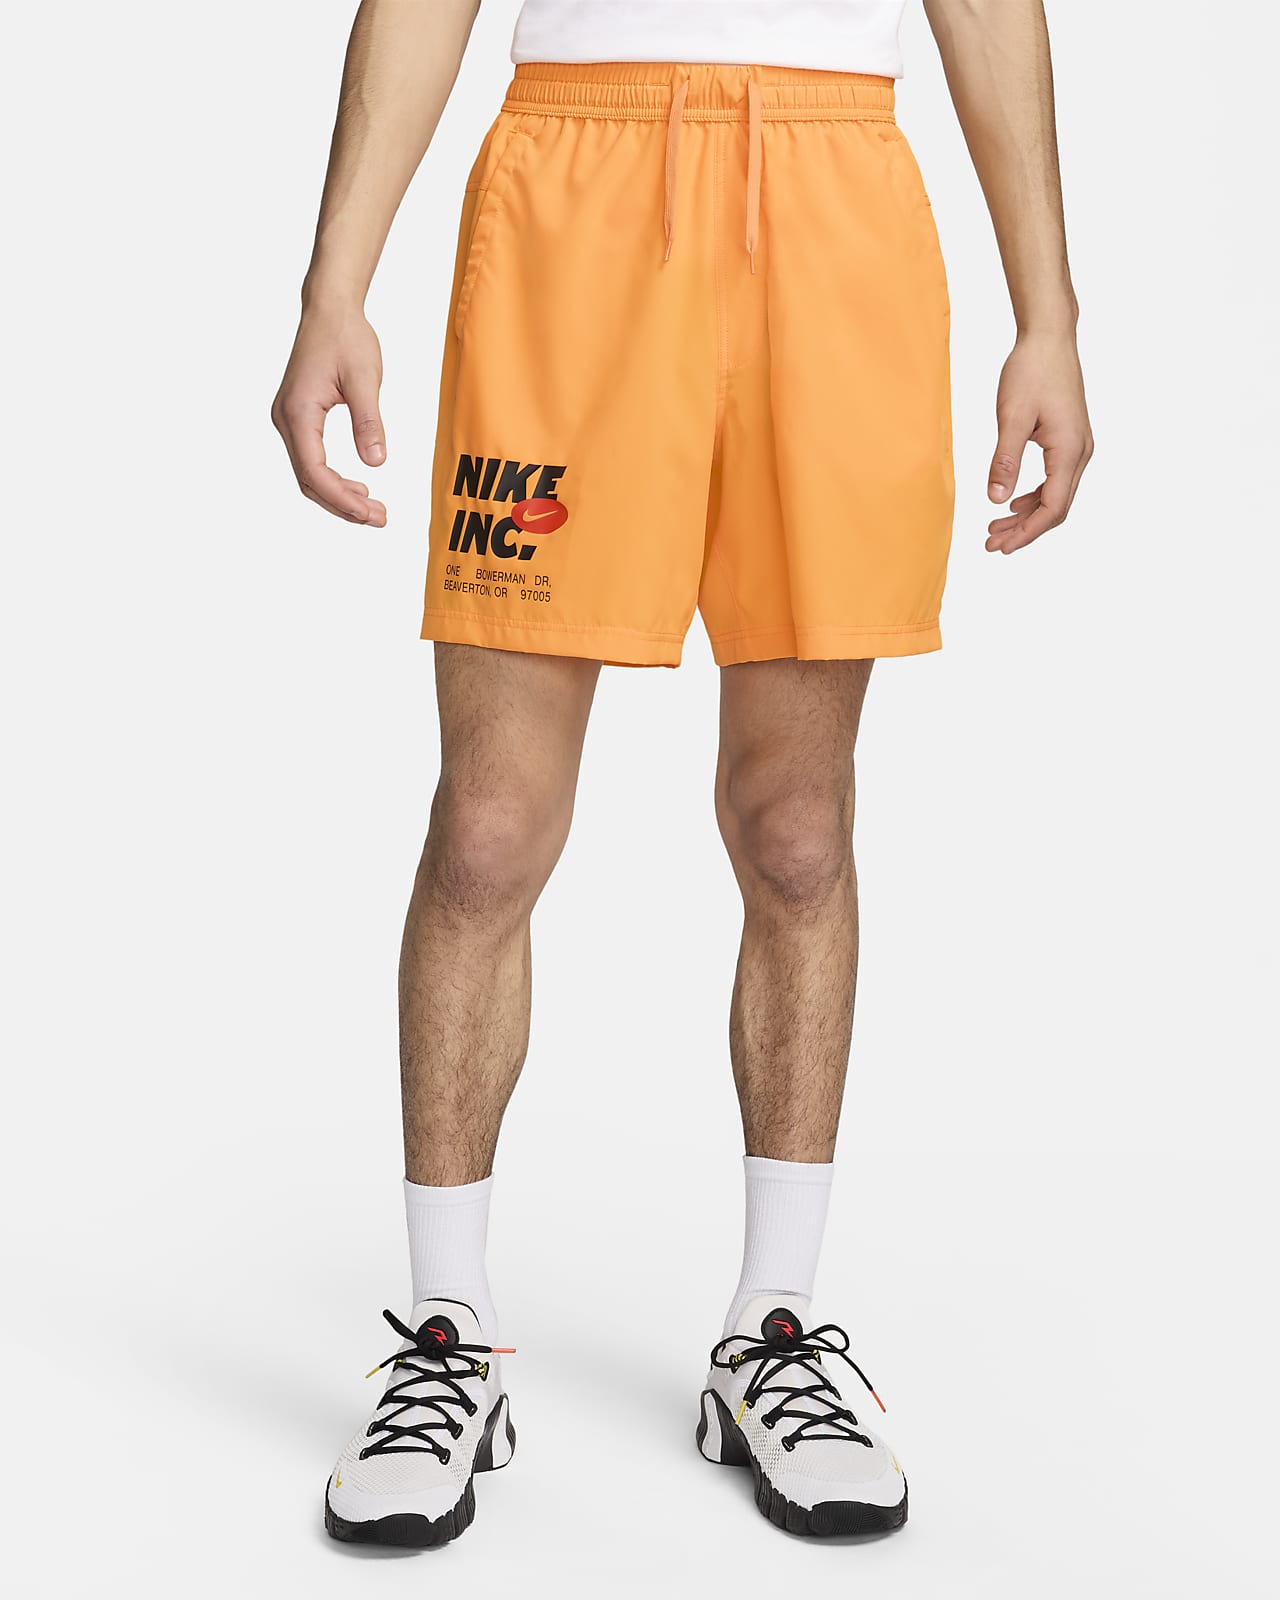 Pánské 18cm fitness kraťasy Nike Form bez podšívky